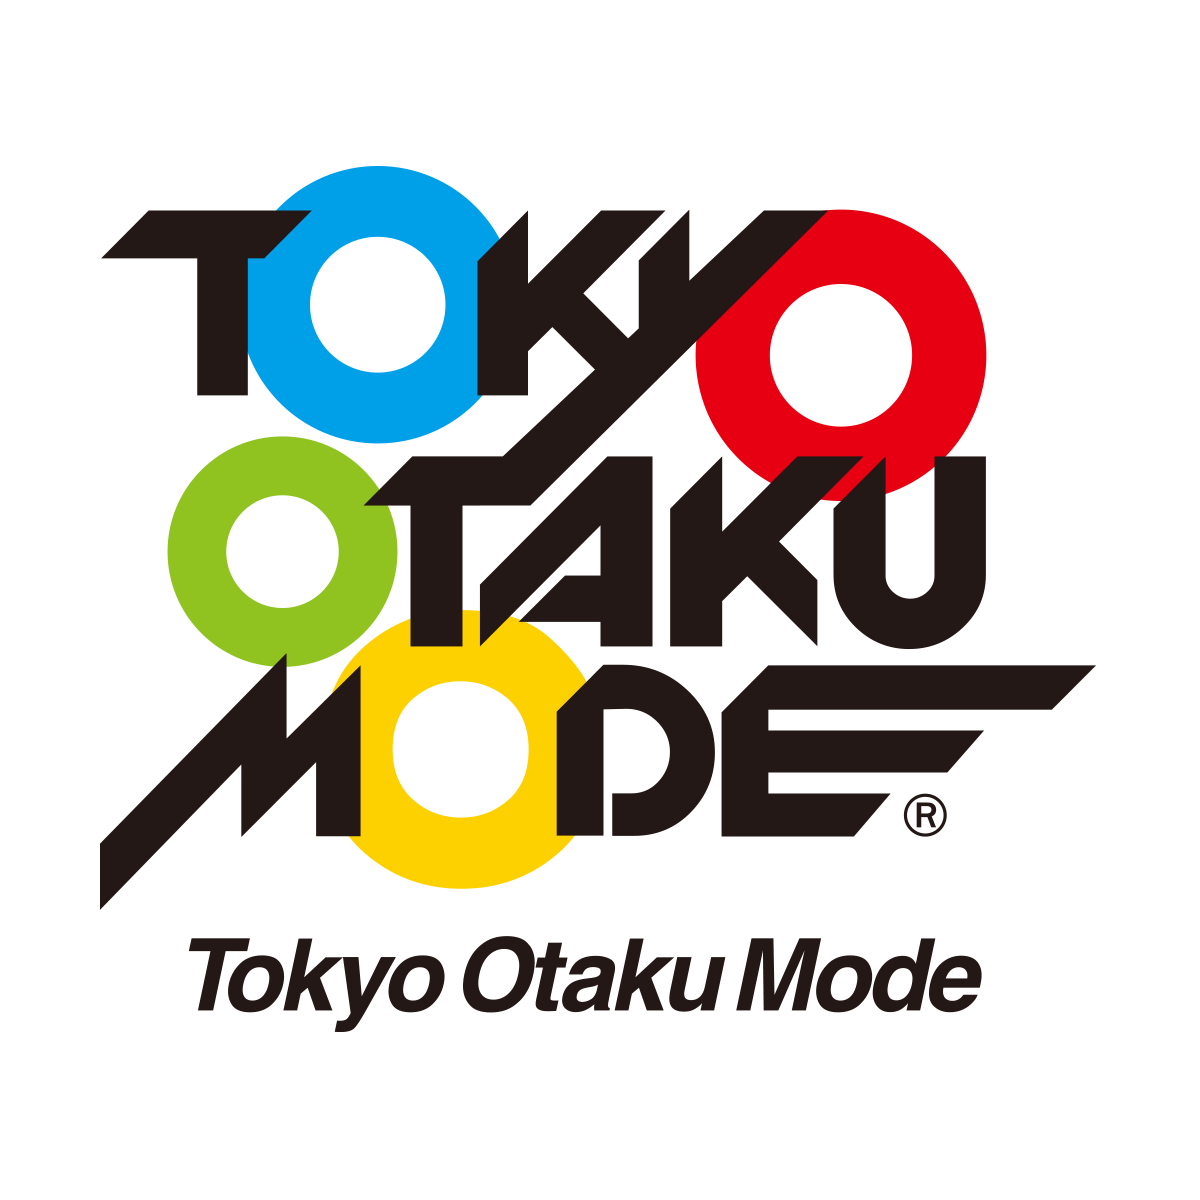 株式会社 Tokyo Otaku Mode